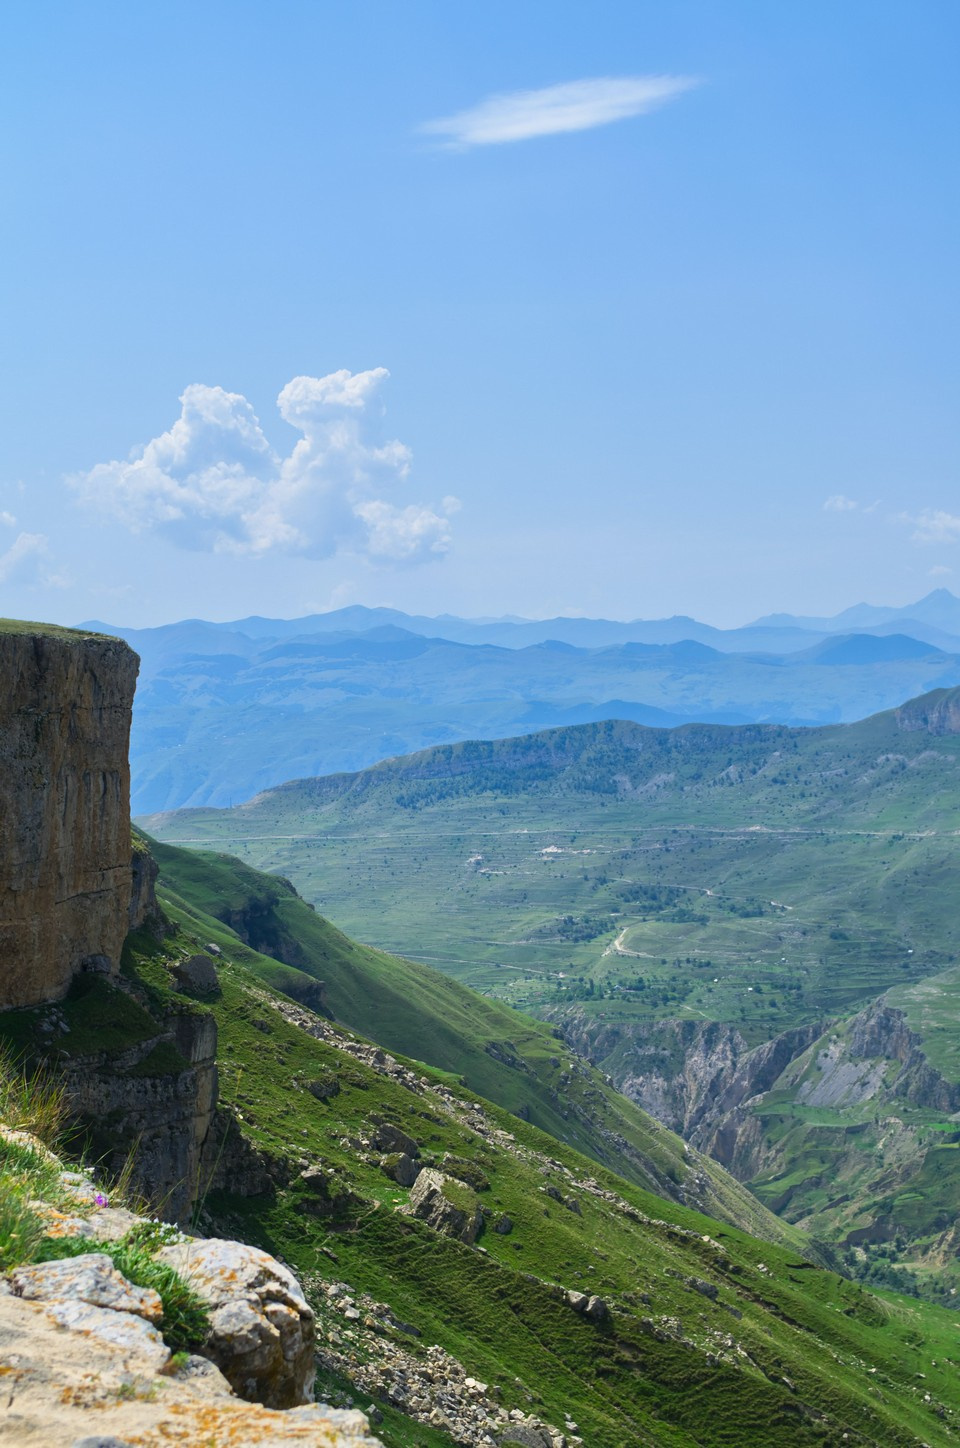 С вершины горы открывается панорама Кавказского хребта